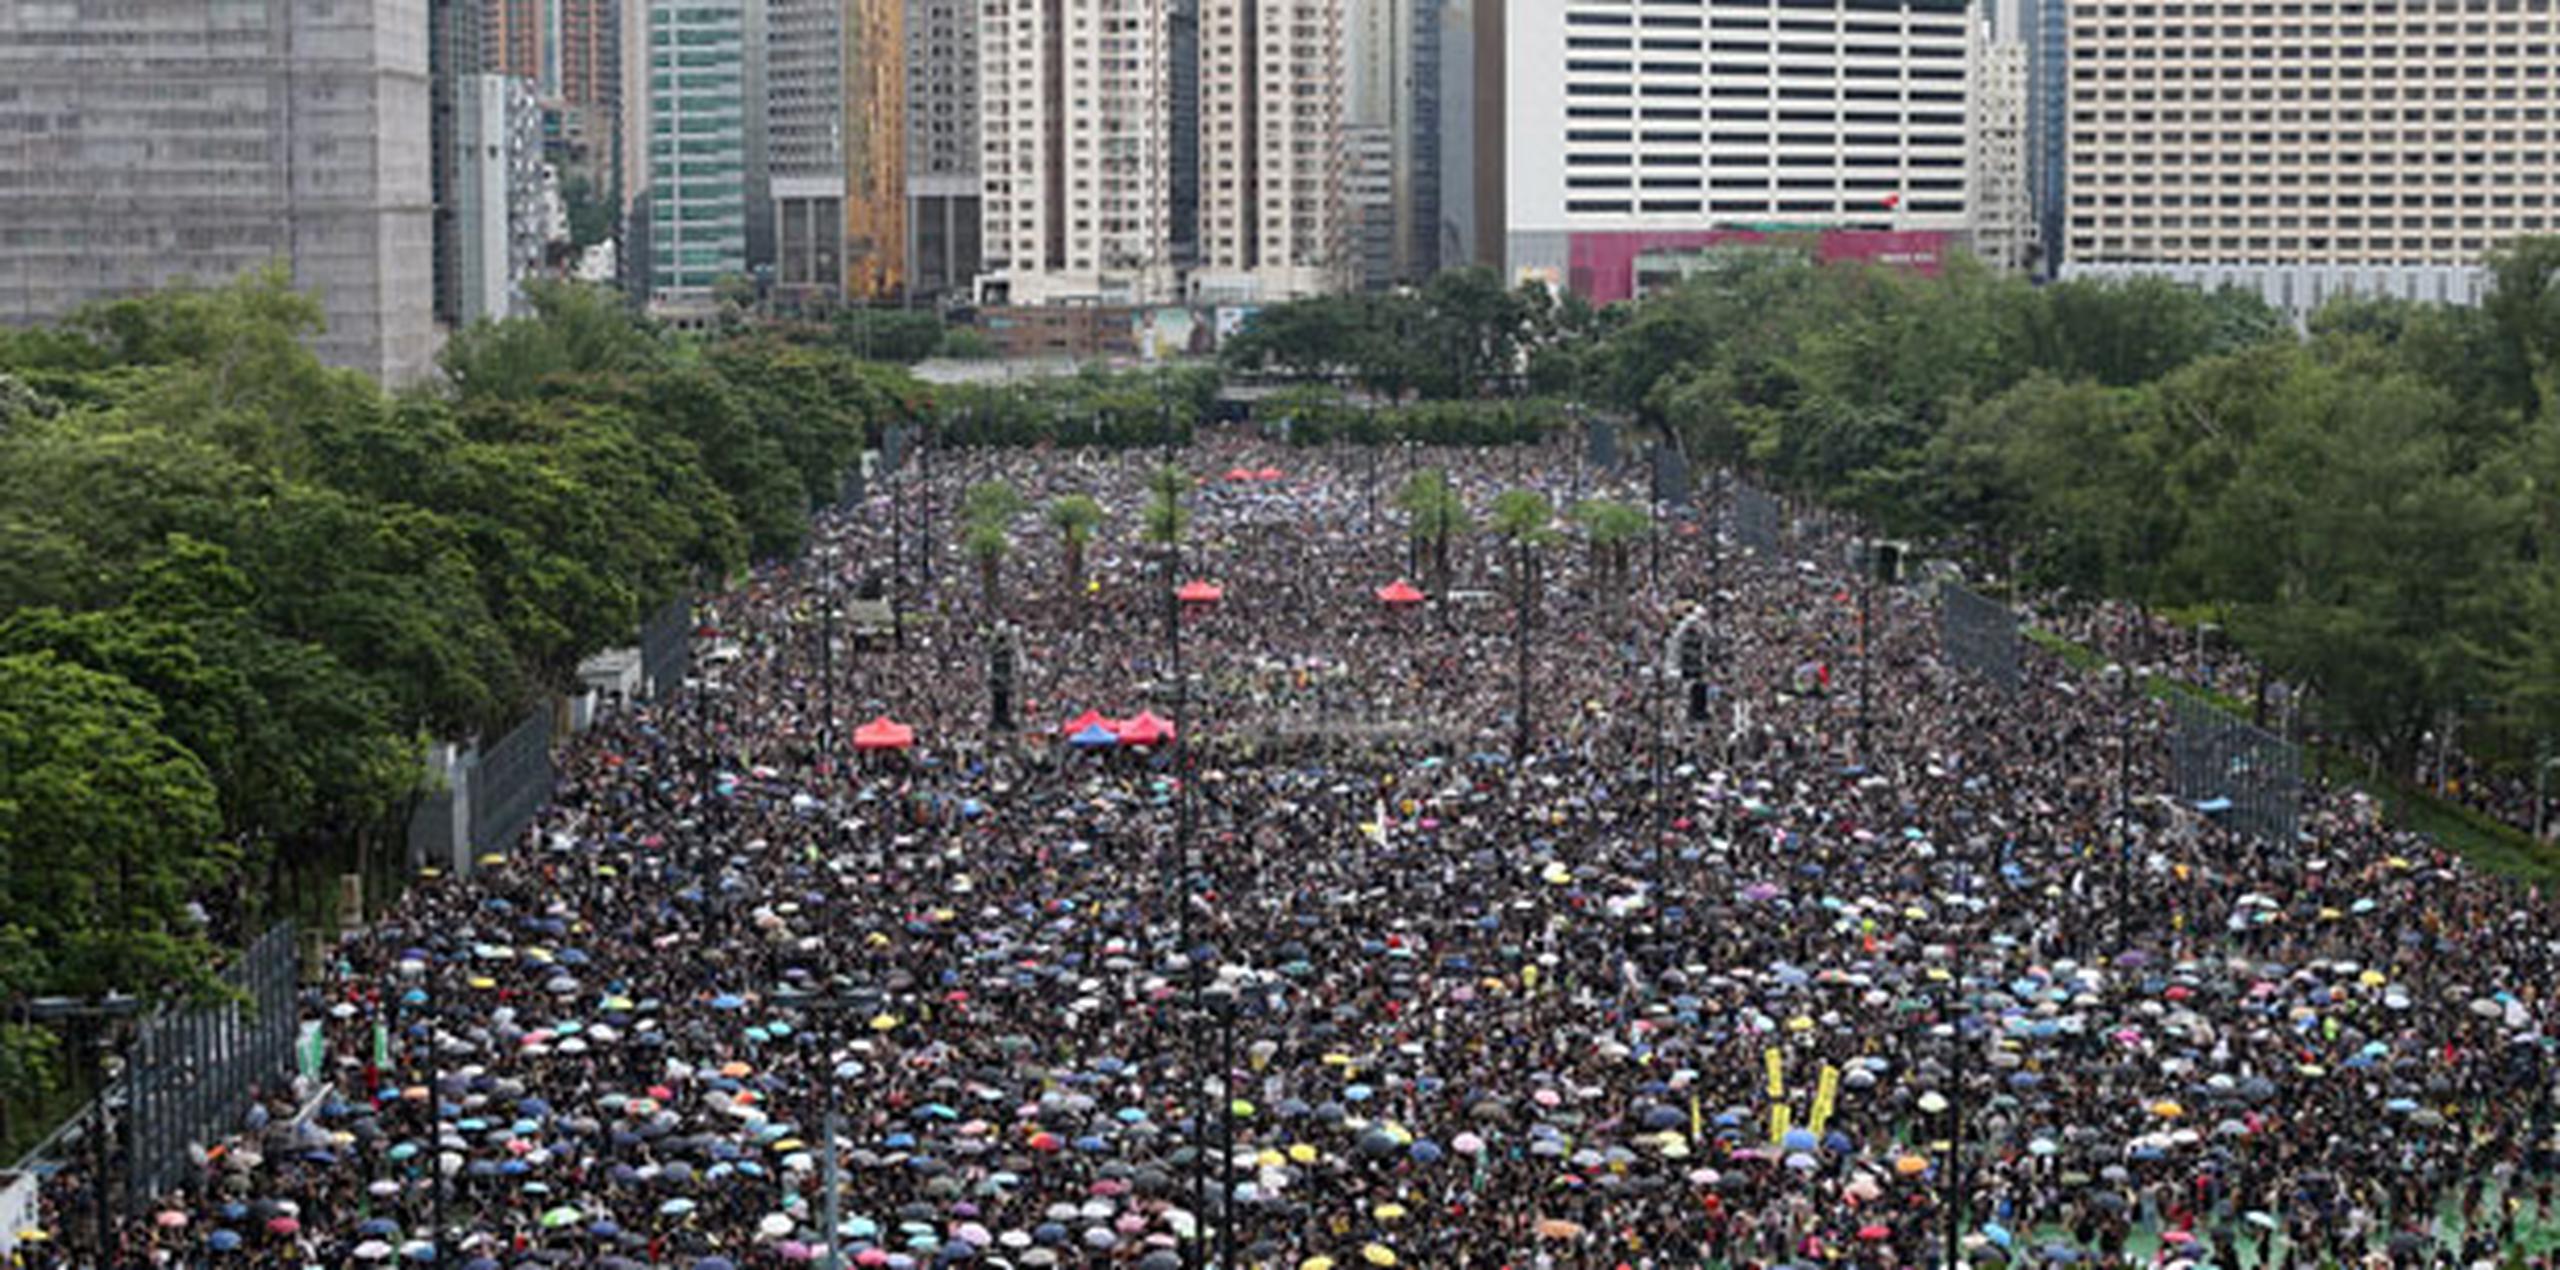 Organizadores dicen que al menos 1.7 millones de personas participaron en la manifestación y marcha del domingo en Hong Kong, aunque la policía calcula que fue mucho menos. (Archivo)